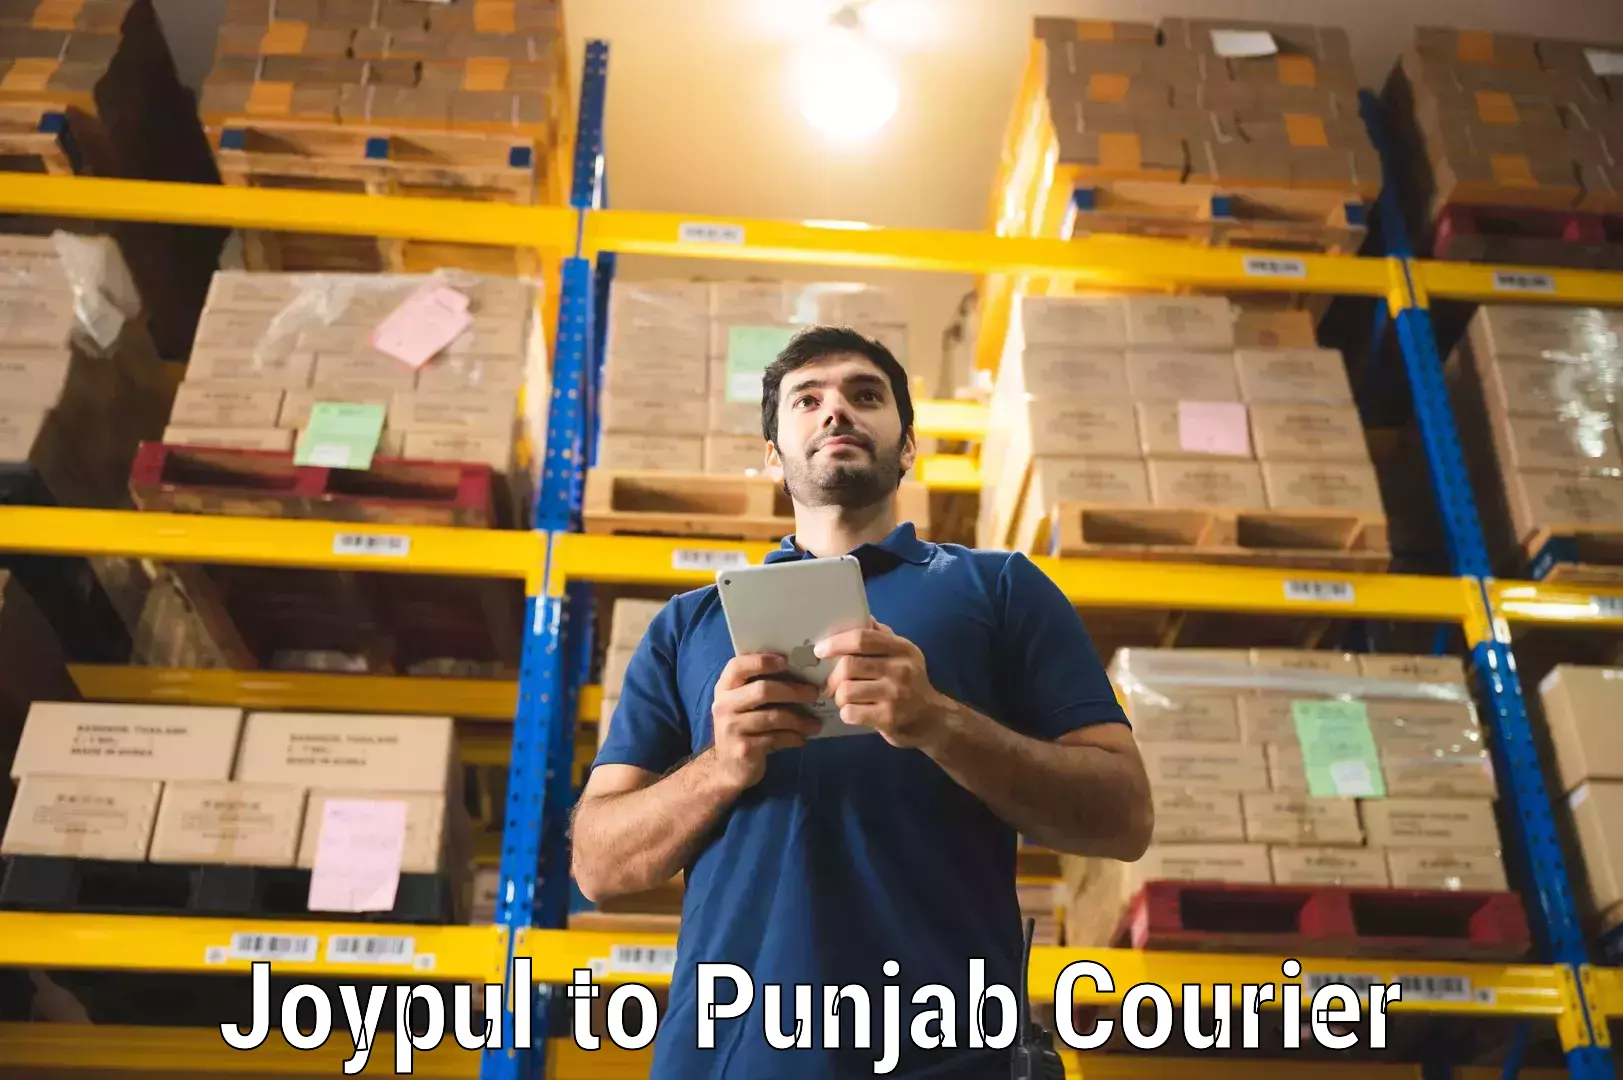 Speedy delivery service Joypul to Punjab